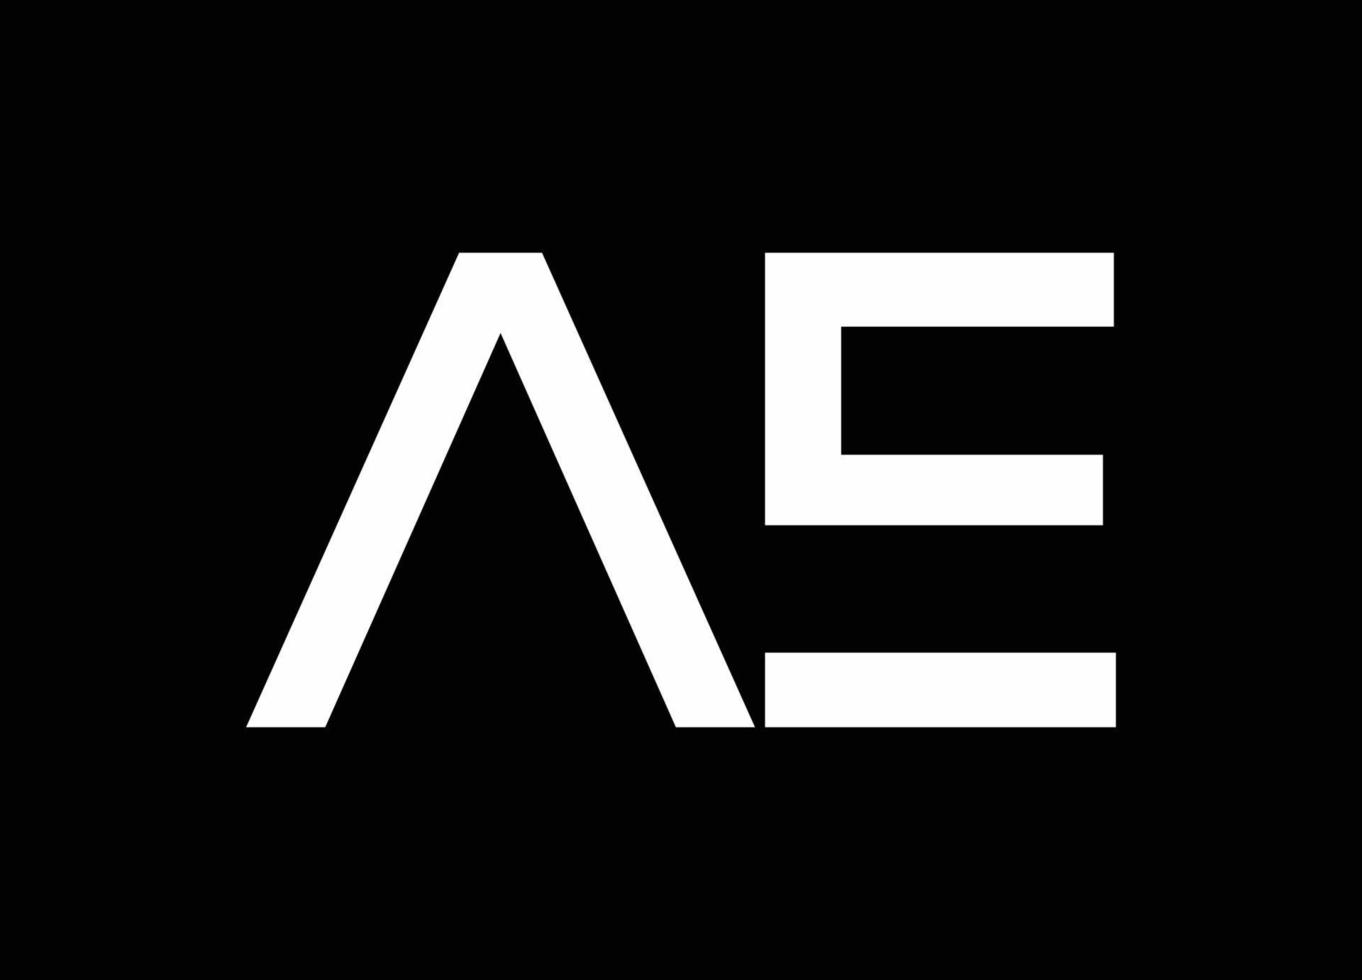 ae lettres initiales logo design vecteur